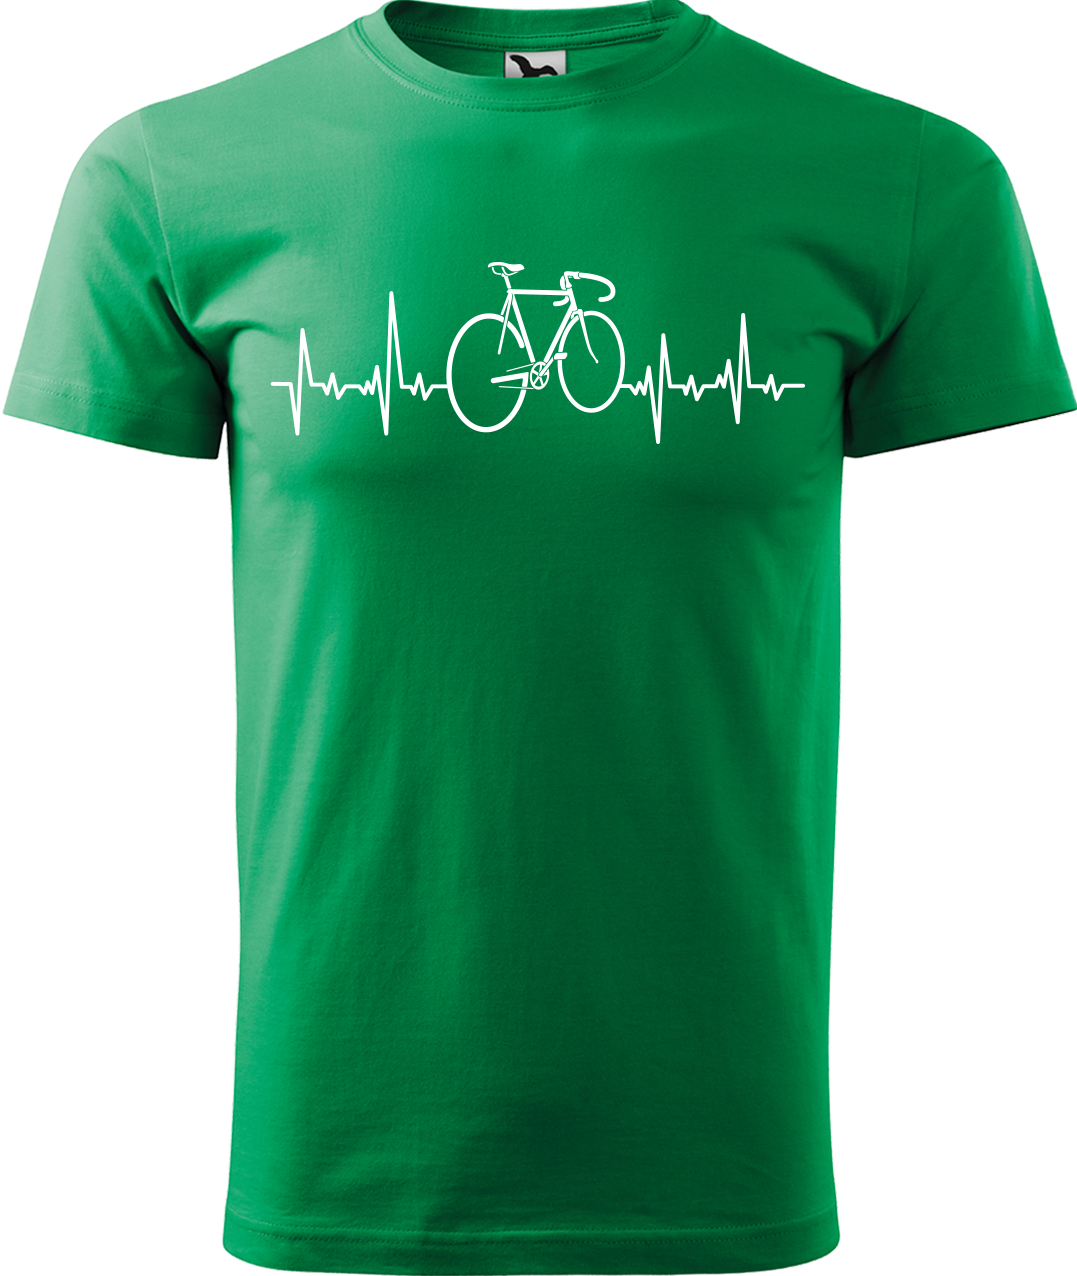 Pánské tričko s kolem - Cyklistův kardiogram Velikost: XL, Barva: Středně zelená (16)